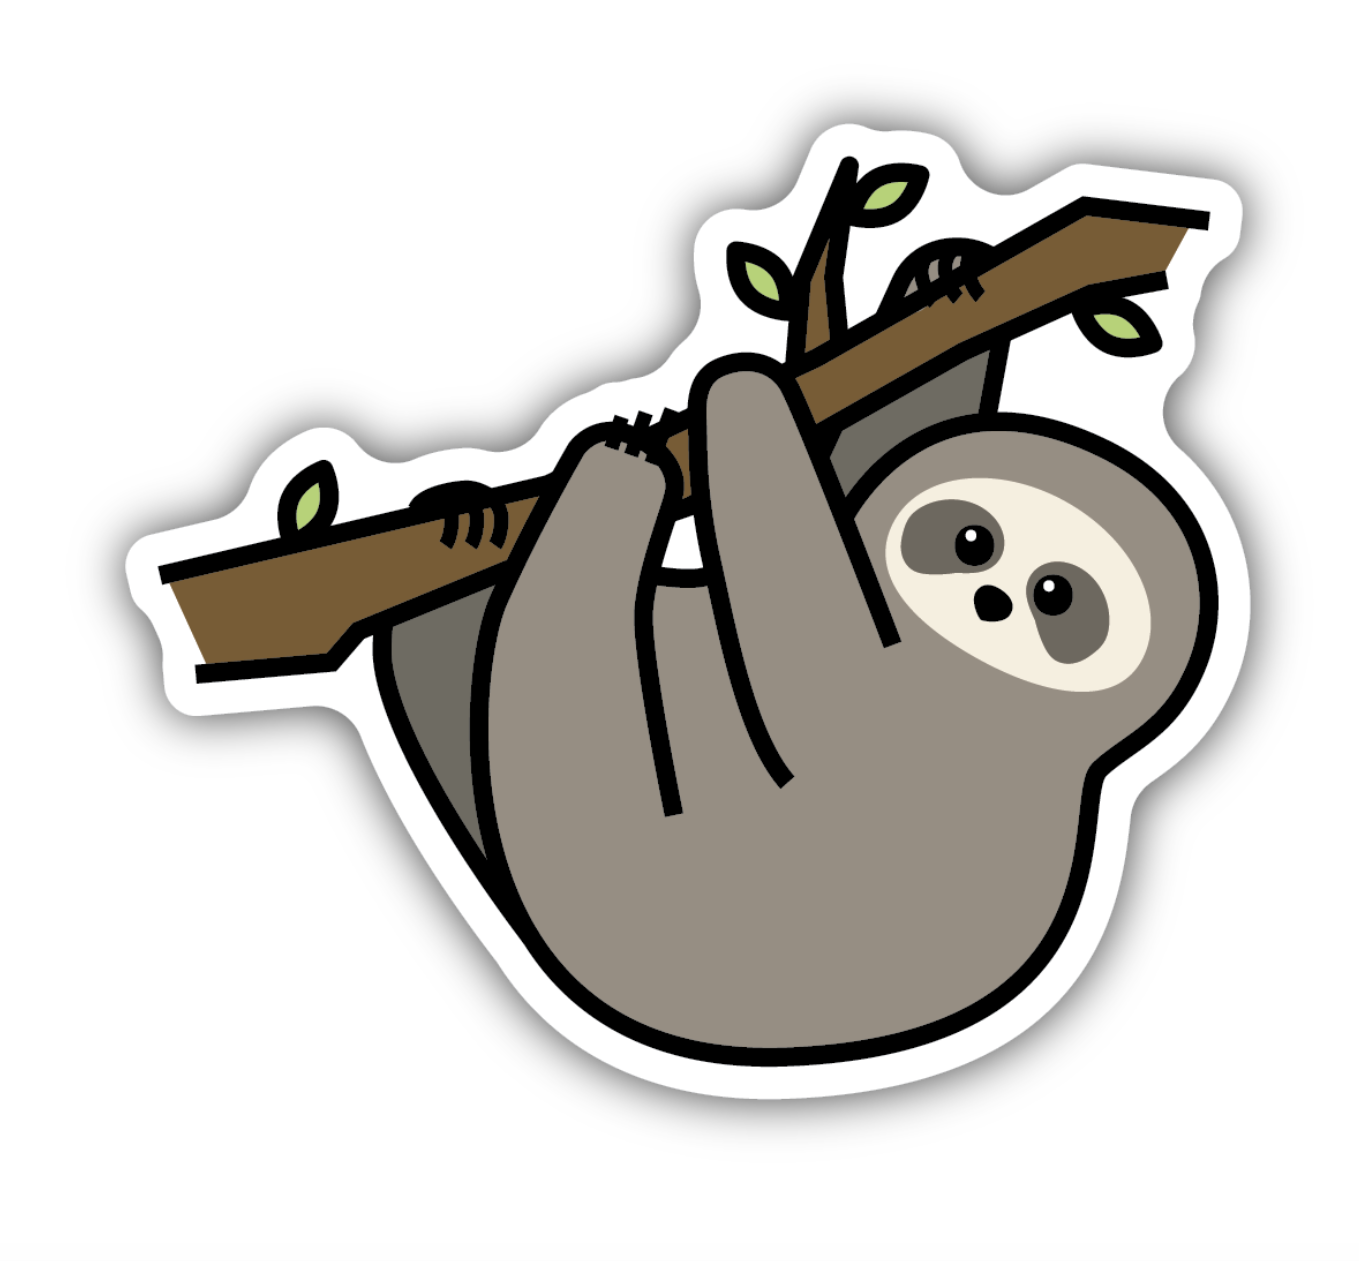 Sloth on Branch Sticker